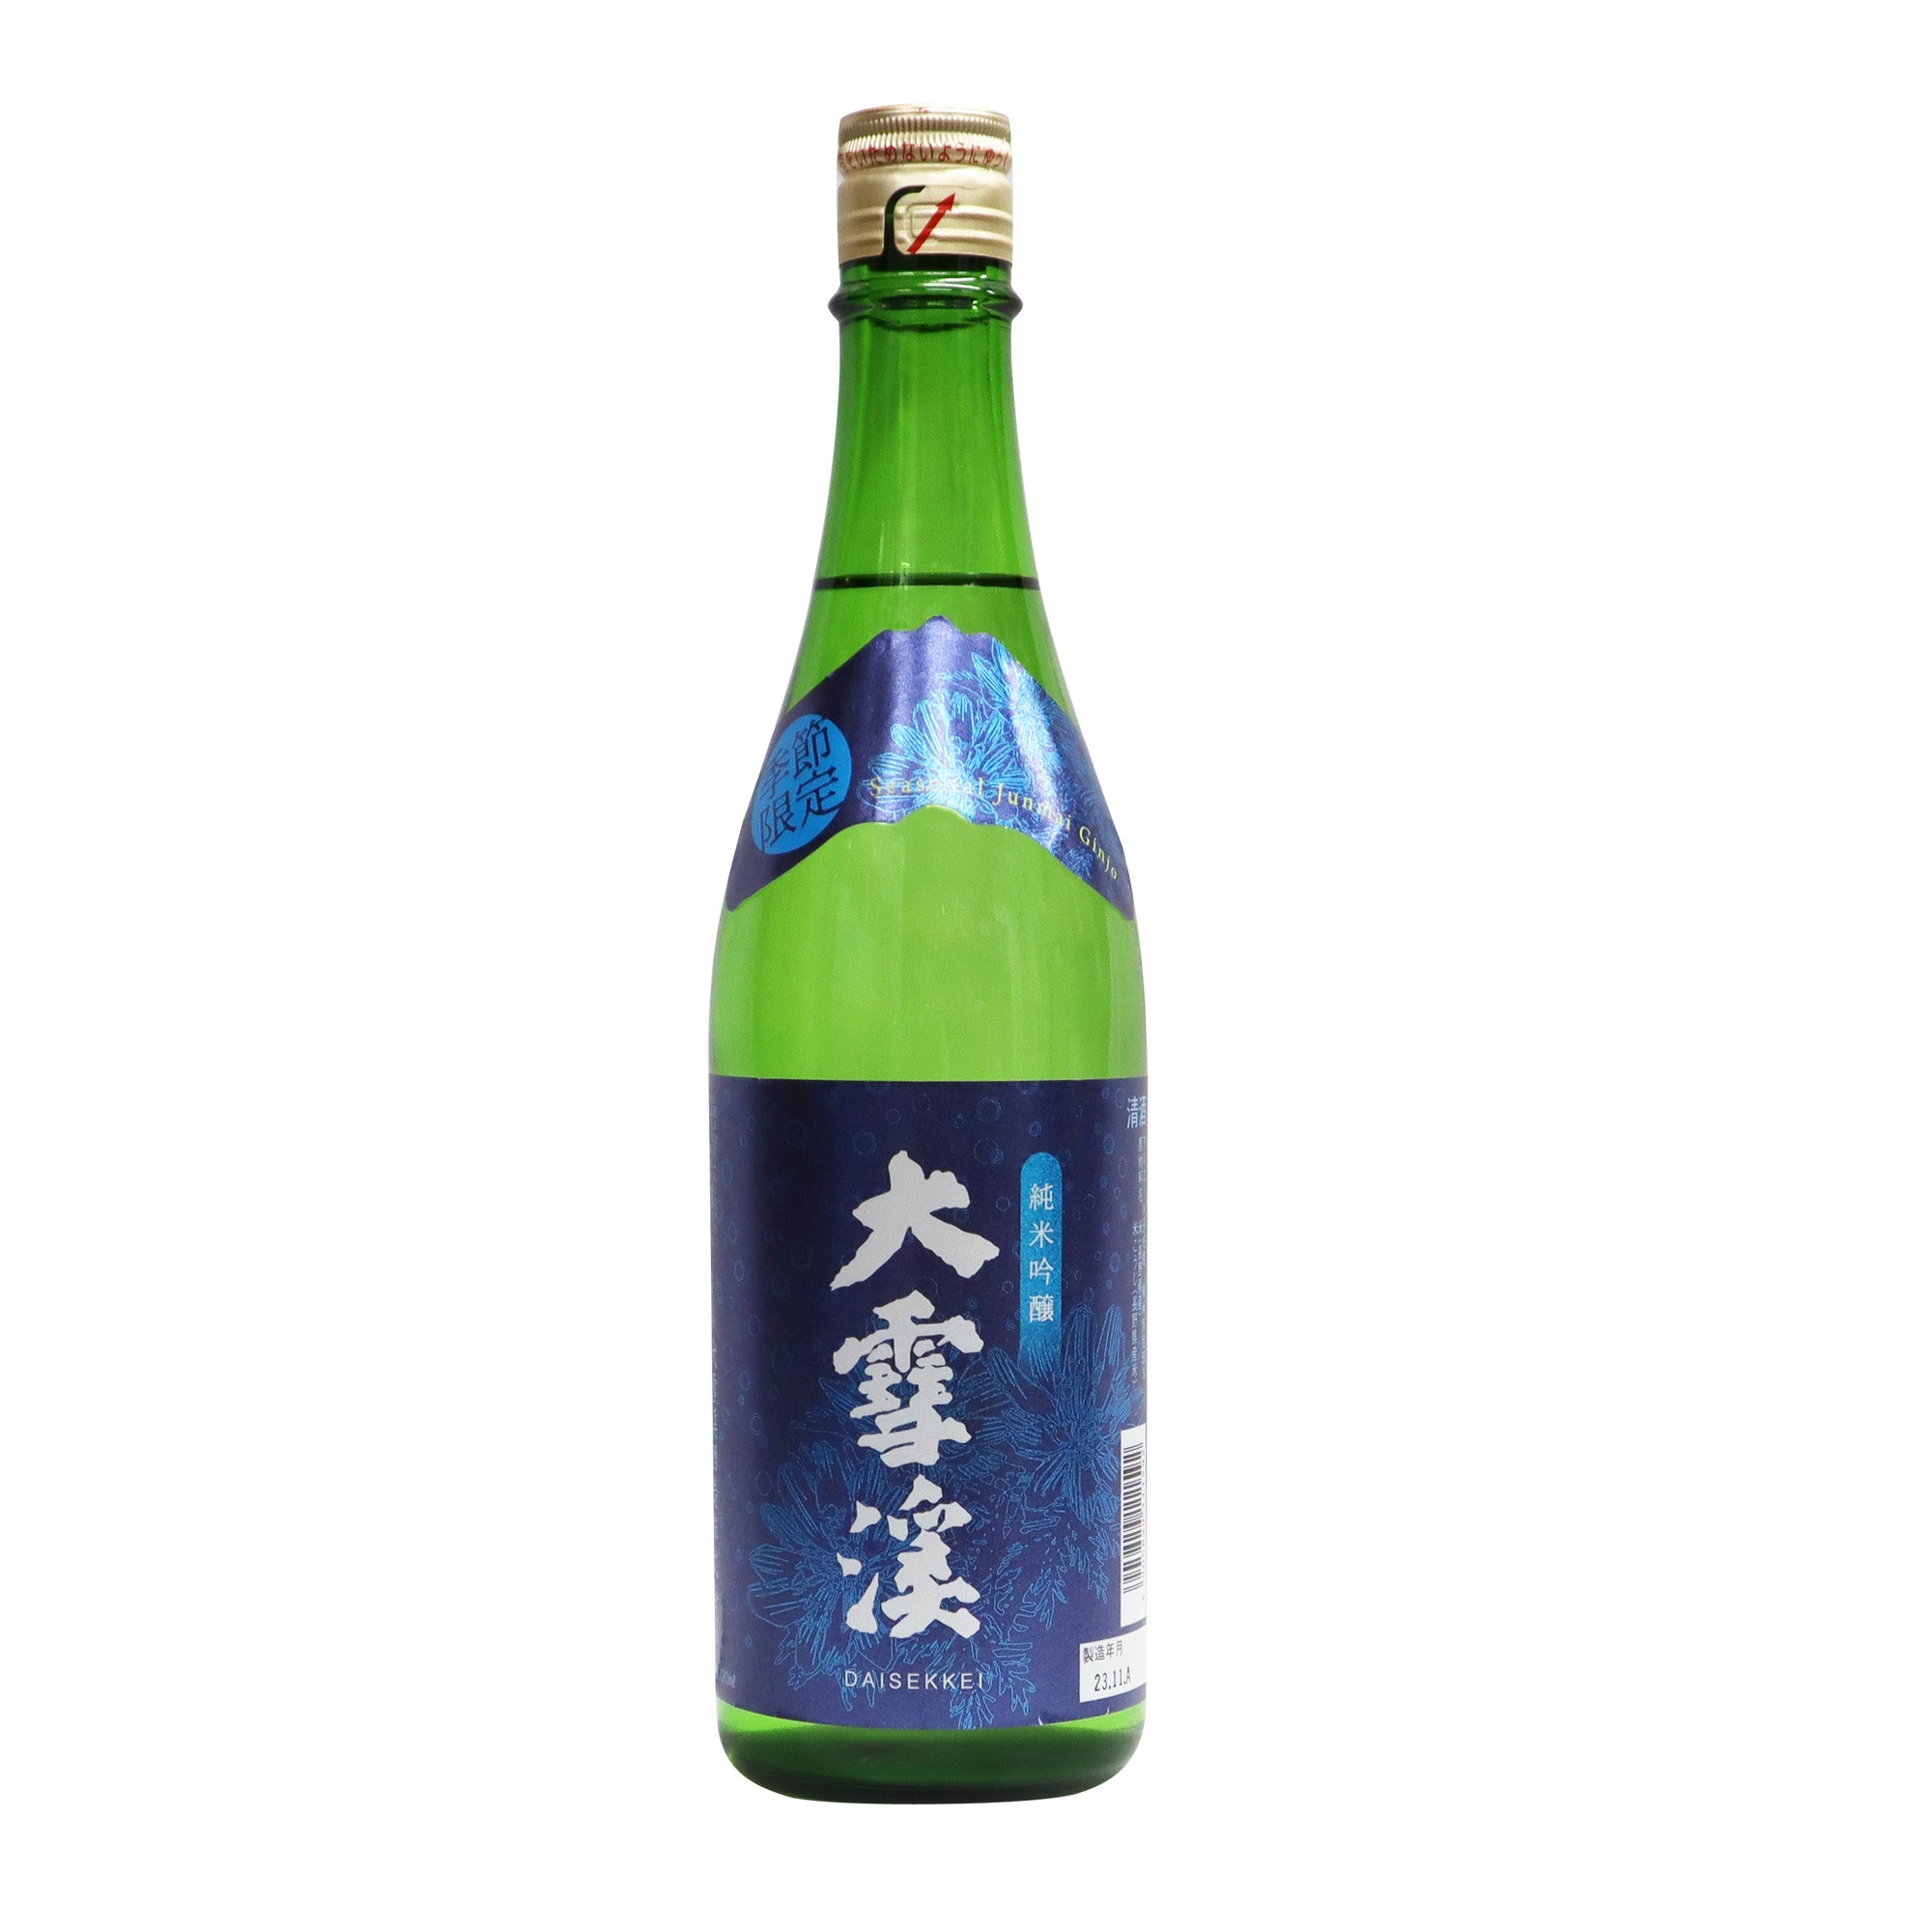 雪中梅 新潟清酒 1.8L 製造年月23.11.14 - 日本酒